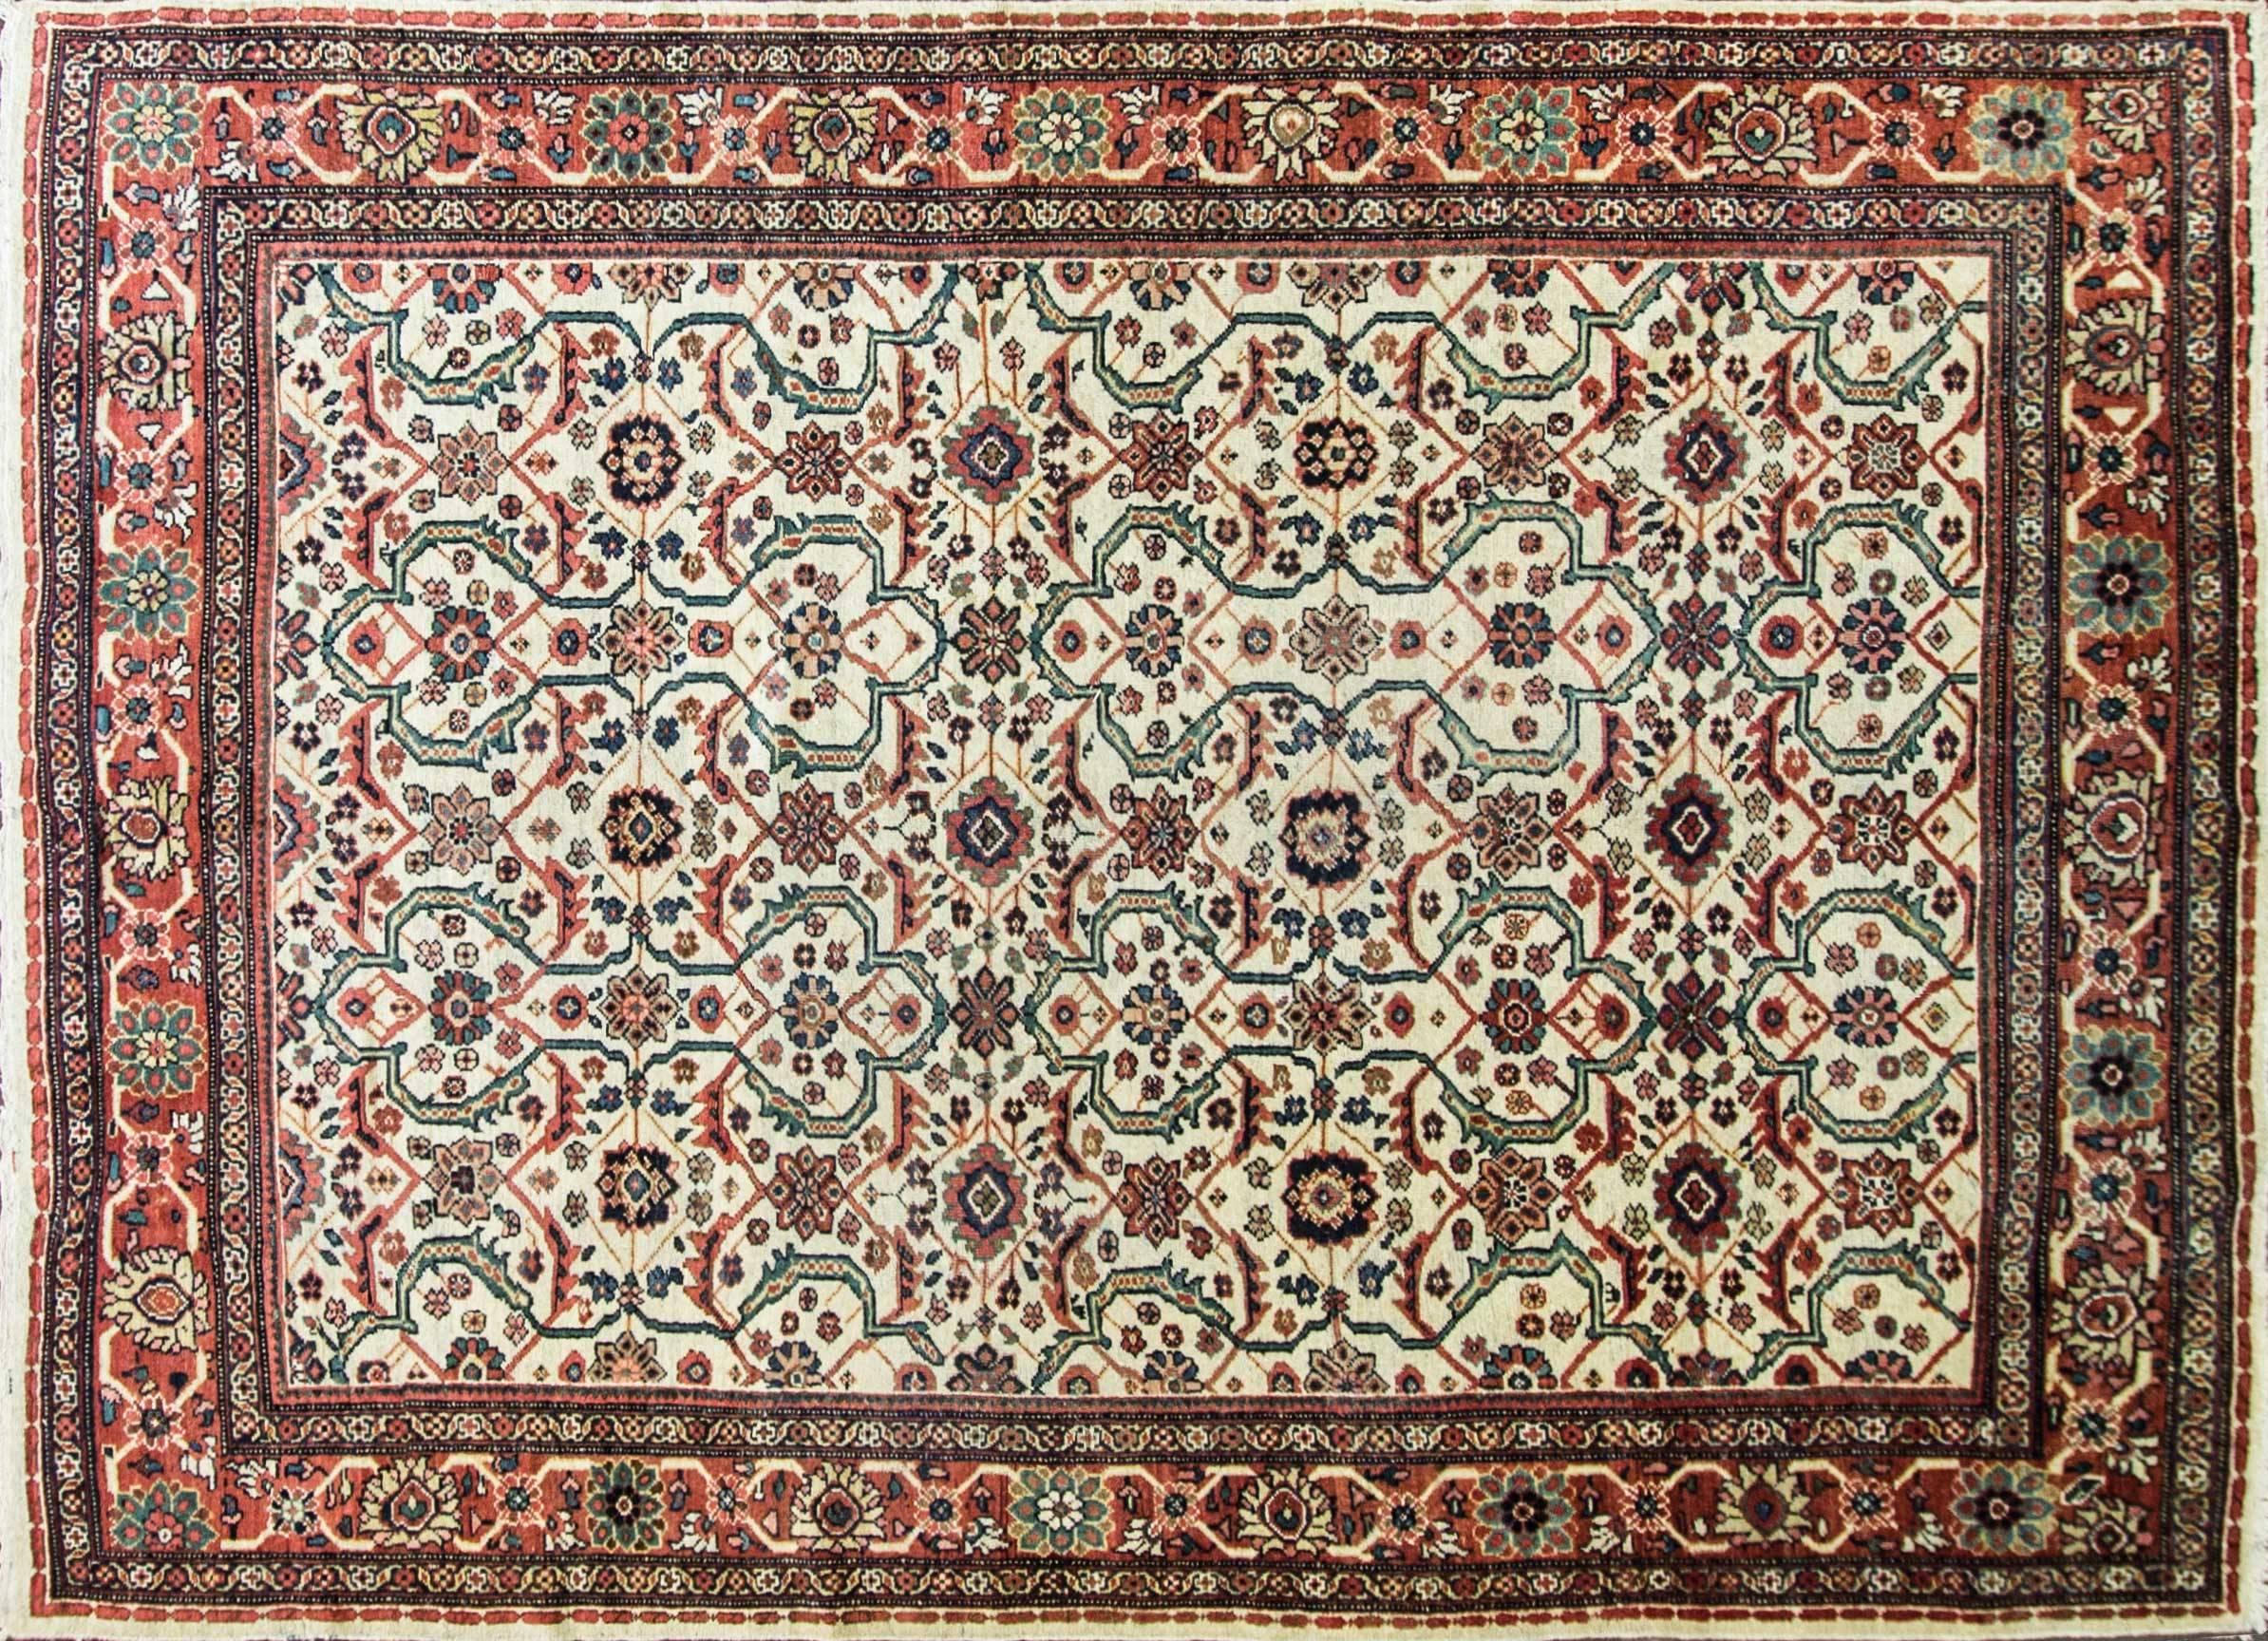 
Superbe tapis persan avec un fond ivoire combiné à de magnifiques verts, rouges et bruns, avec de superbes motifs floraux et géométriques sur l'ensemble du tapis.
Tissé avec de la laine très fine teintée dans la masse. Une bonne qualité et un